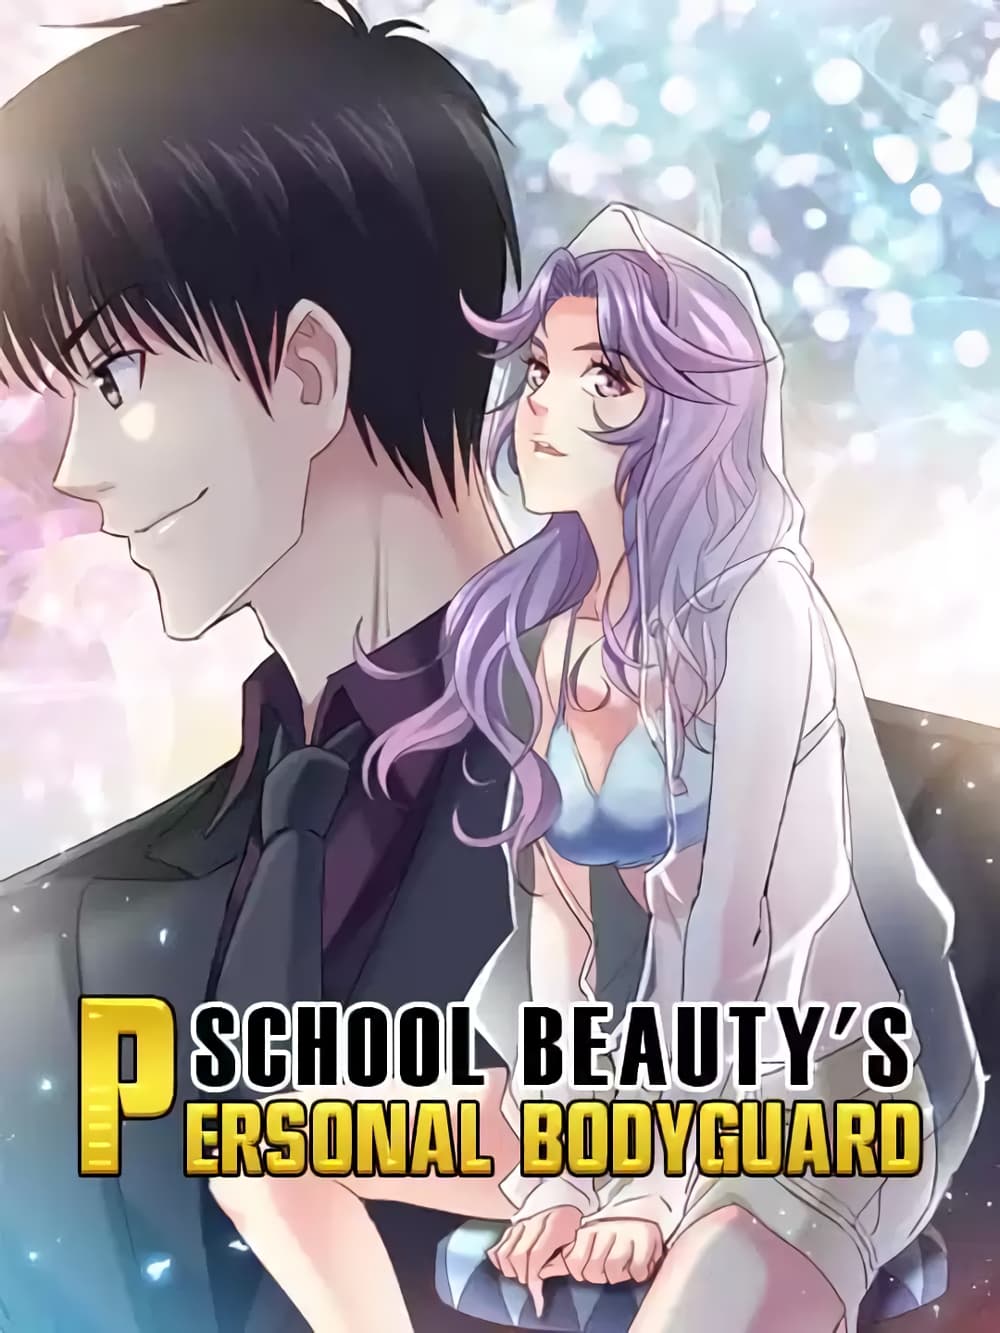 School Beauty’s Bodyguard 279 (1)